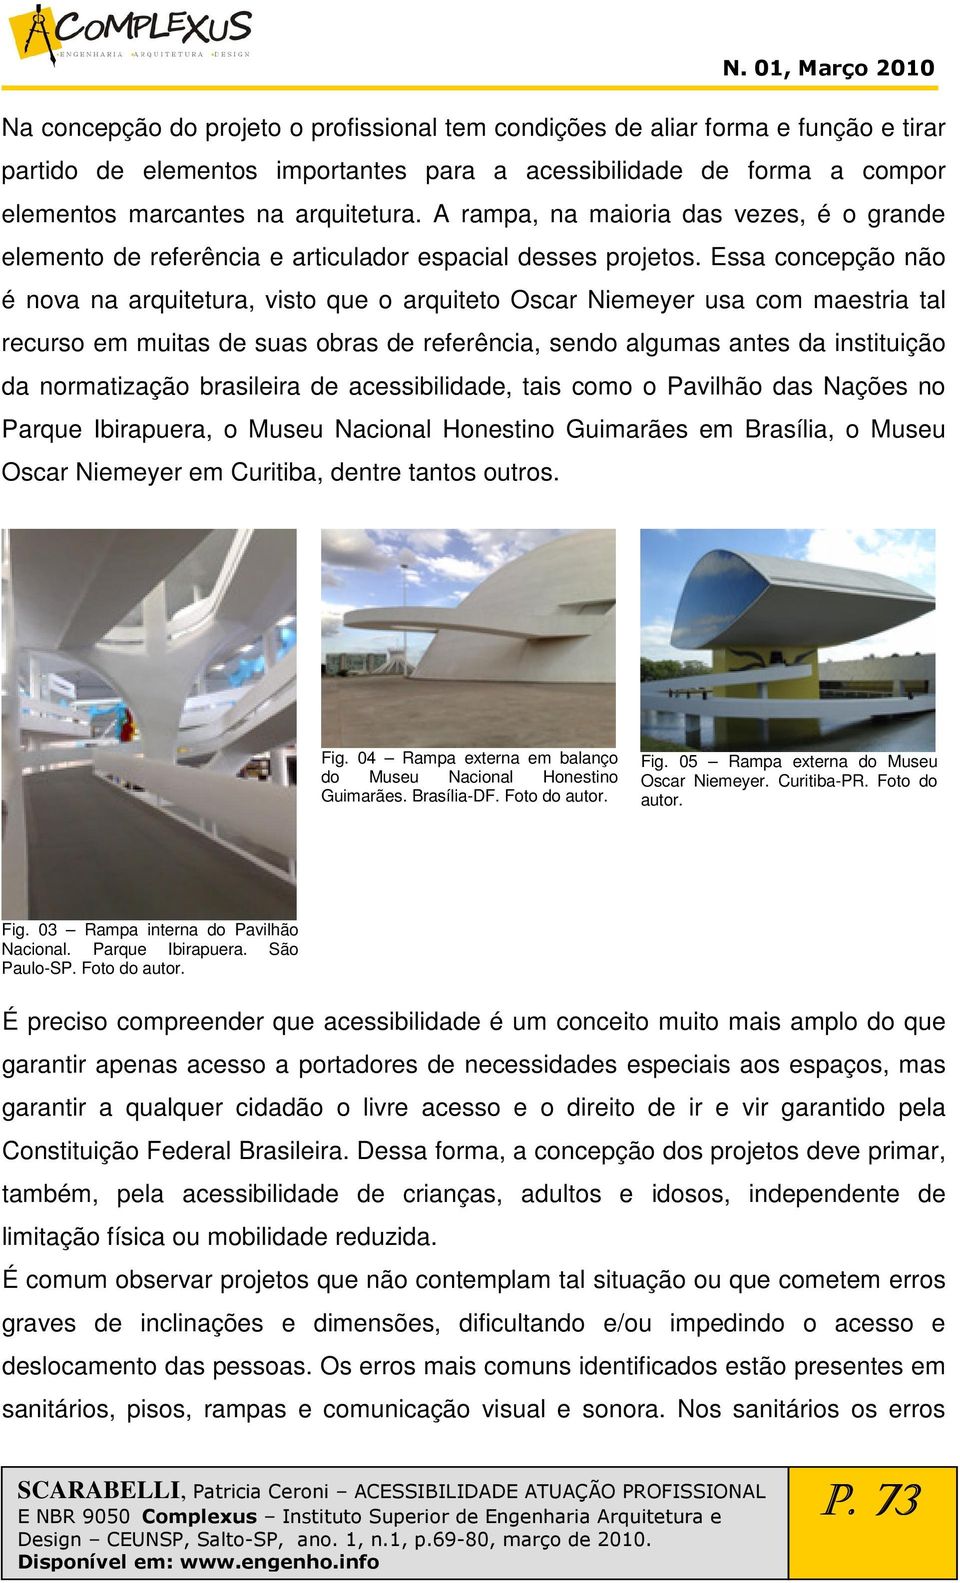 Essa concepção não é nova na arquitetura, visto que o arquiteto Oscar Niemeyer usa com maestria tal recurso em muitas de suas obras de referência, sendo algumas antes da instituição da normatização